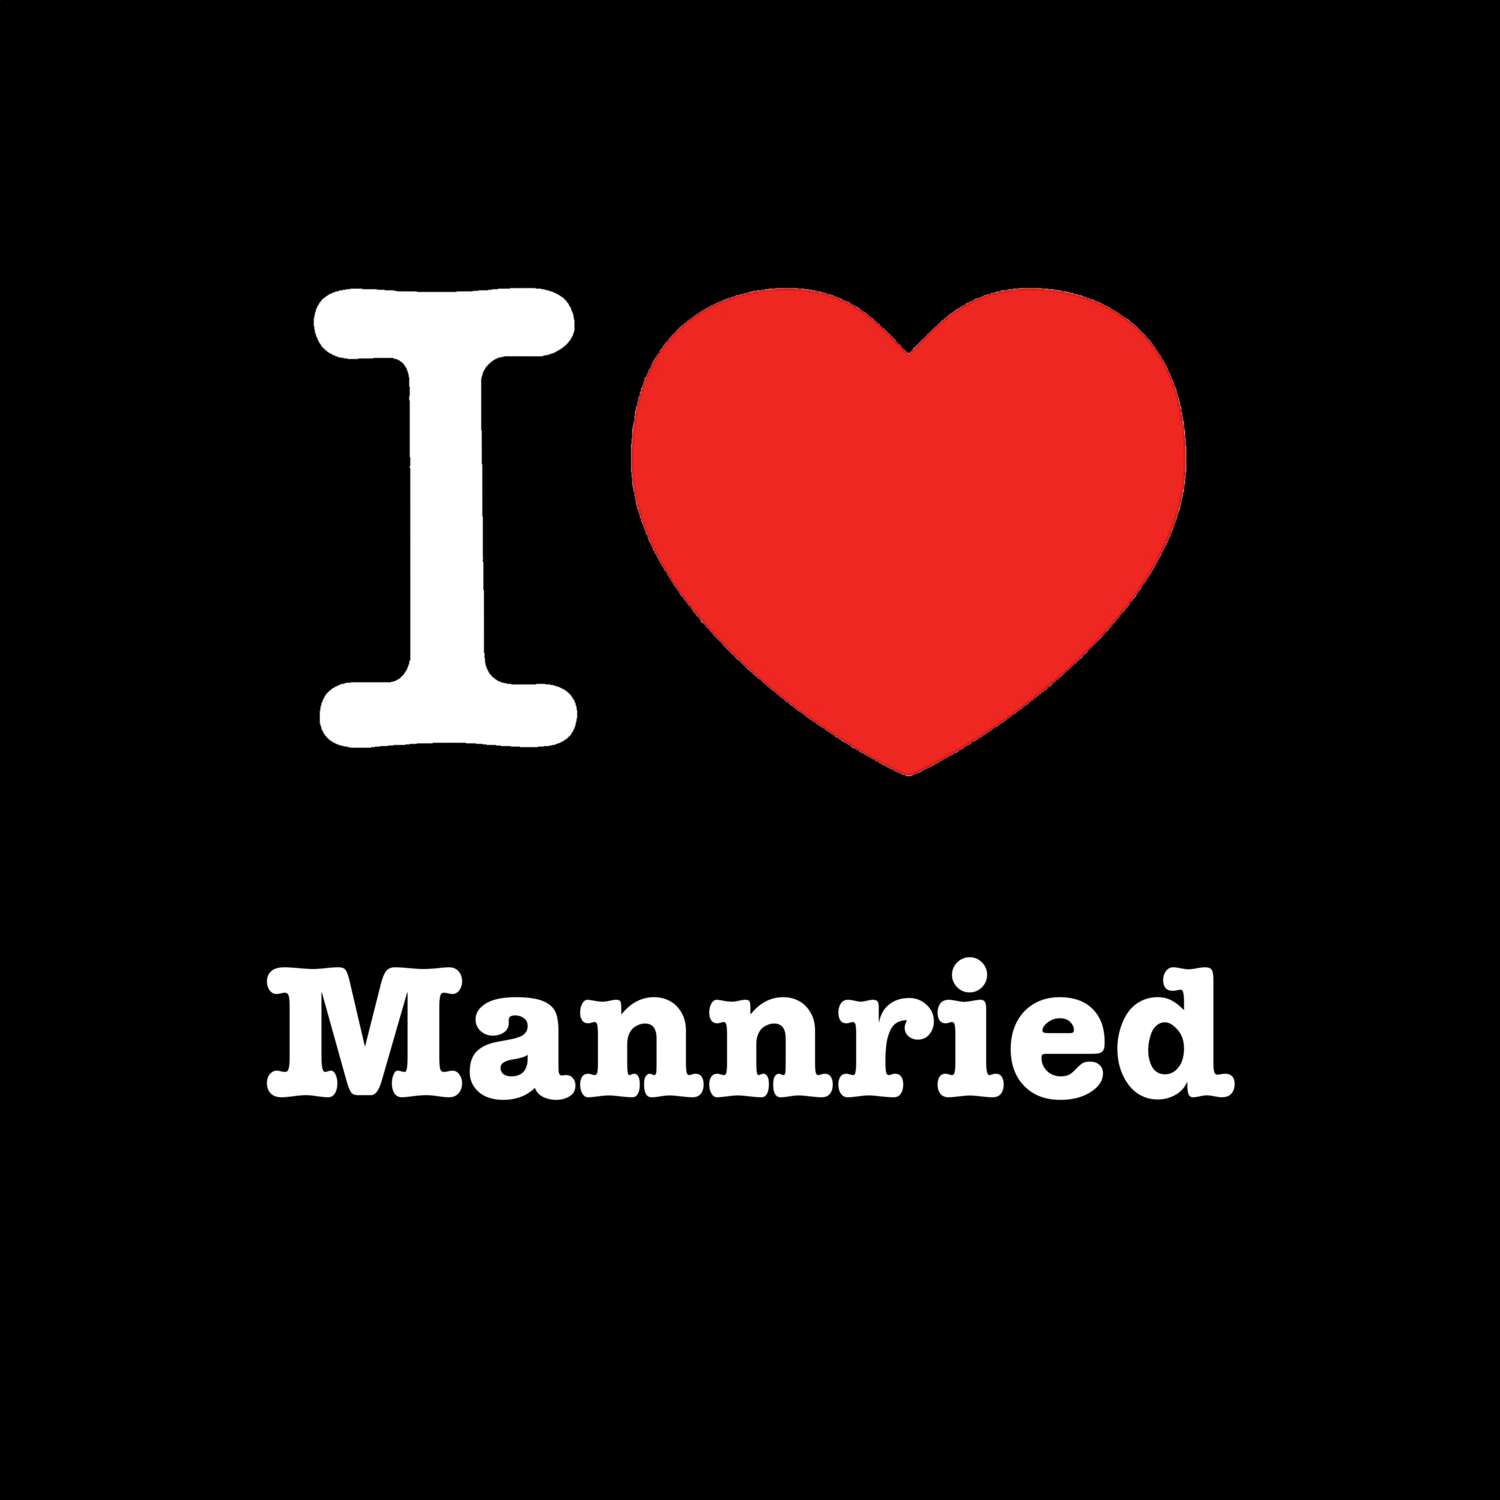 Mannried T-Shirt »I love«